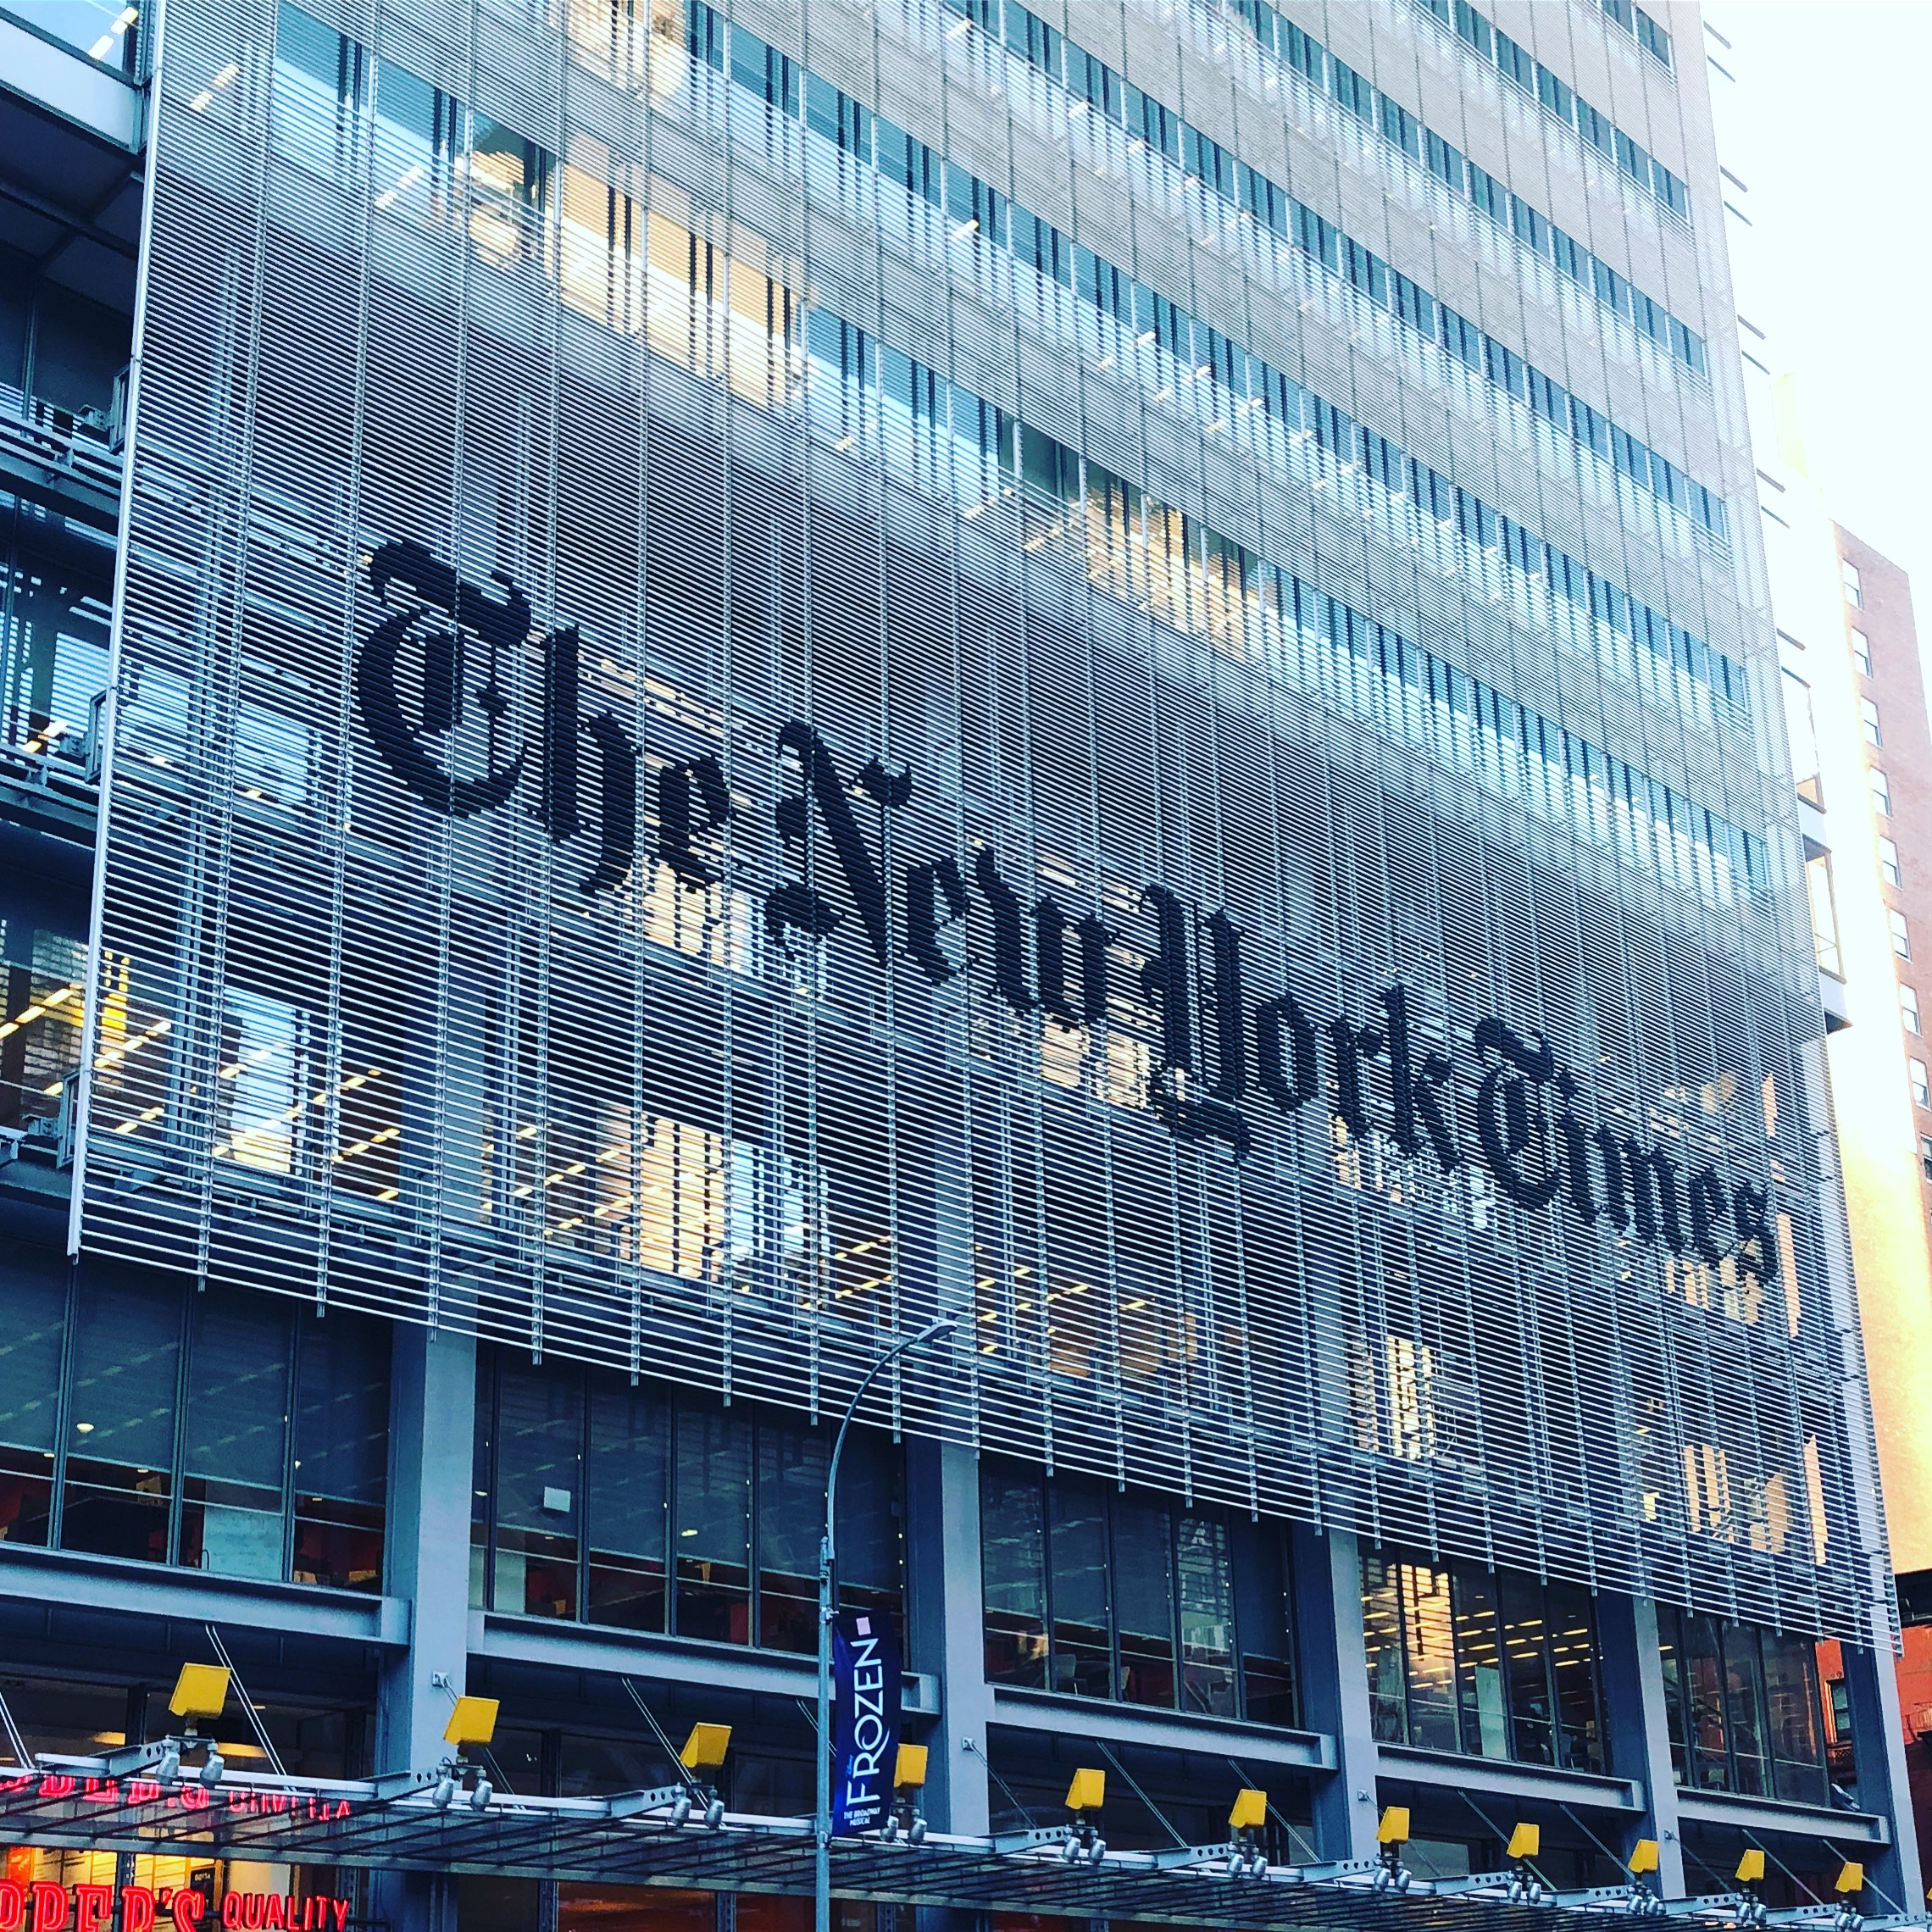 New York Times, New York, NY